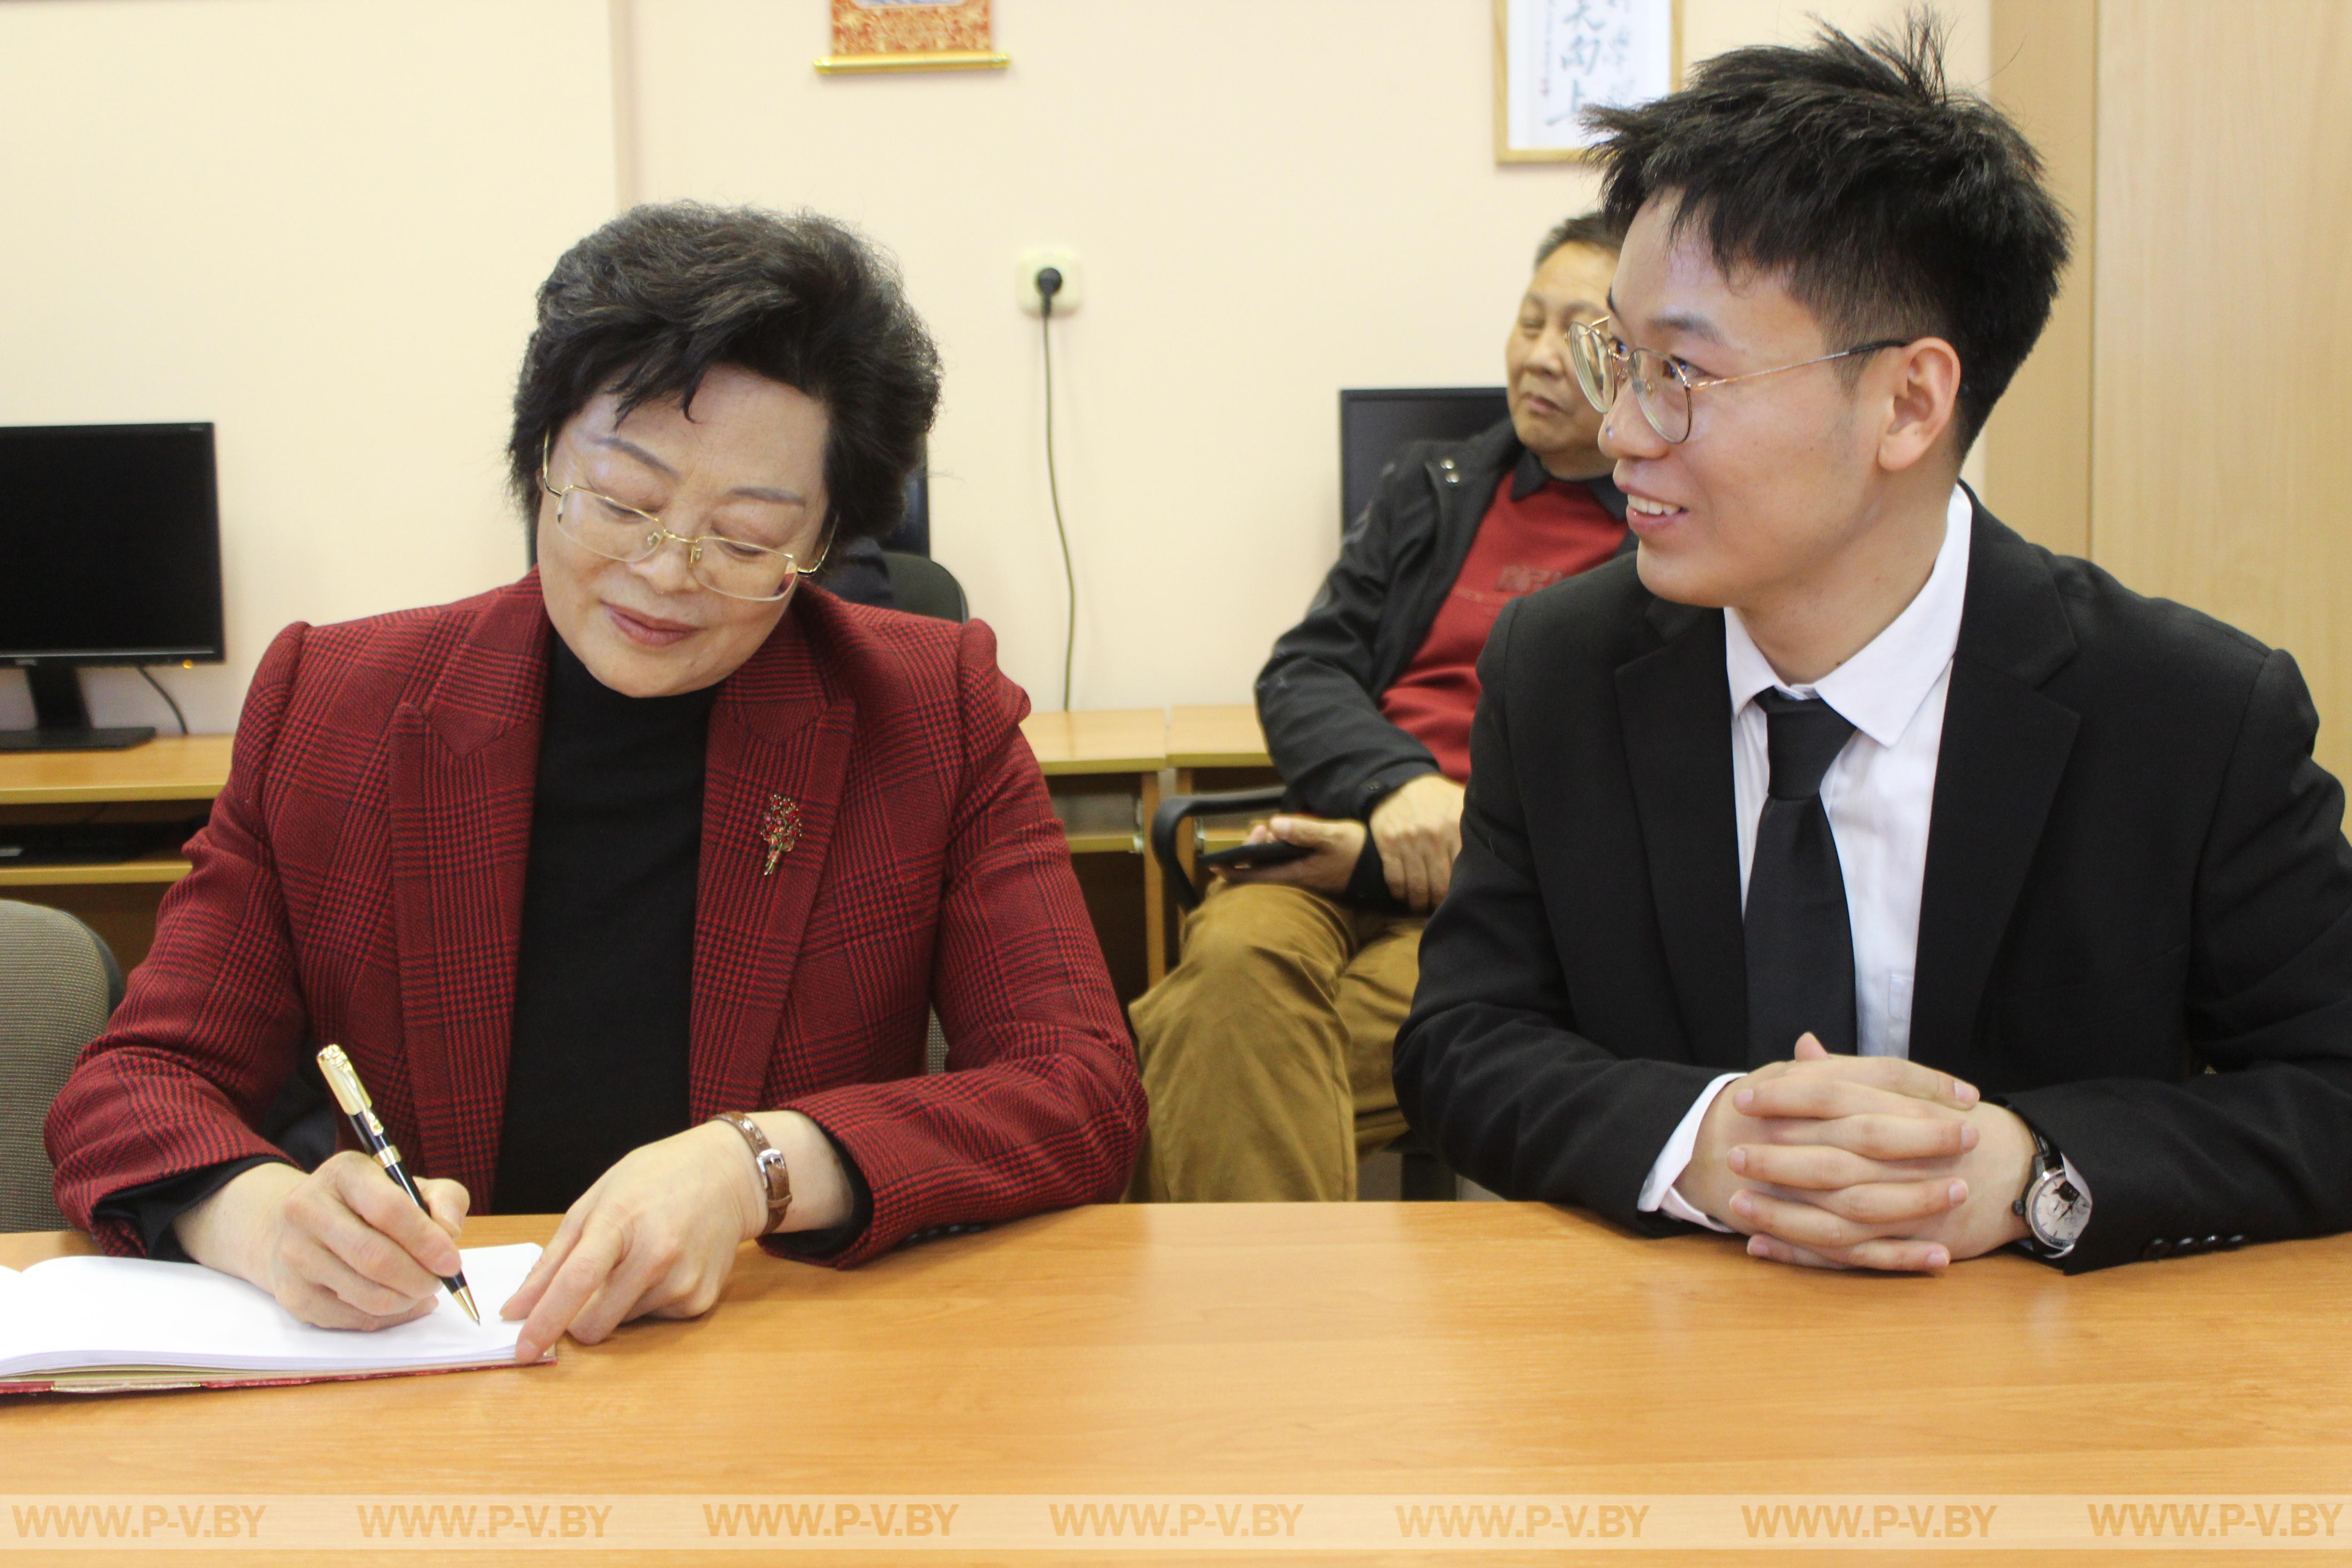 Пинск радушно принимал делегацию из китайского города Сянъян, провинция Хубэй